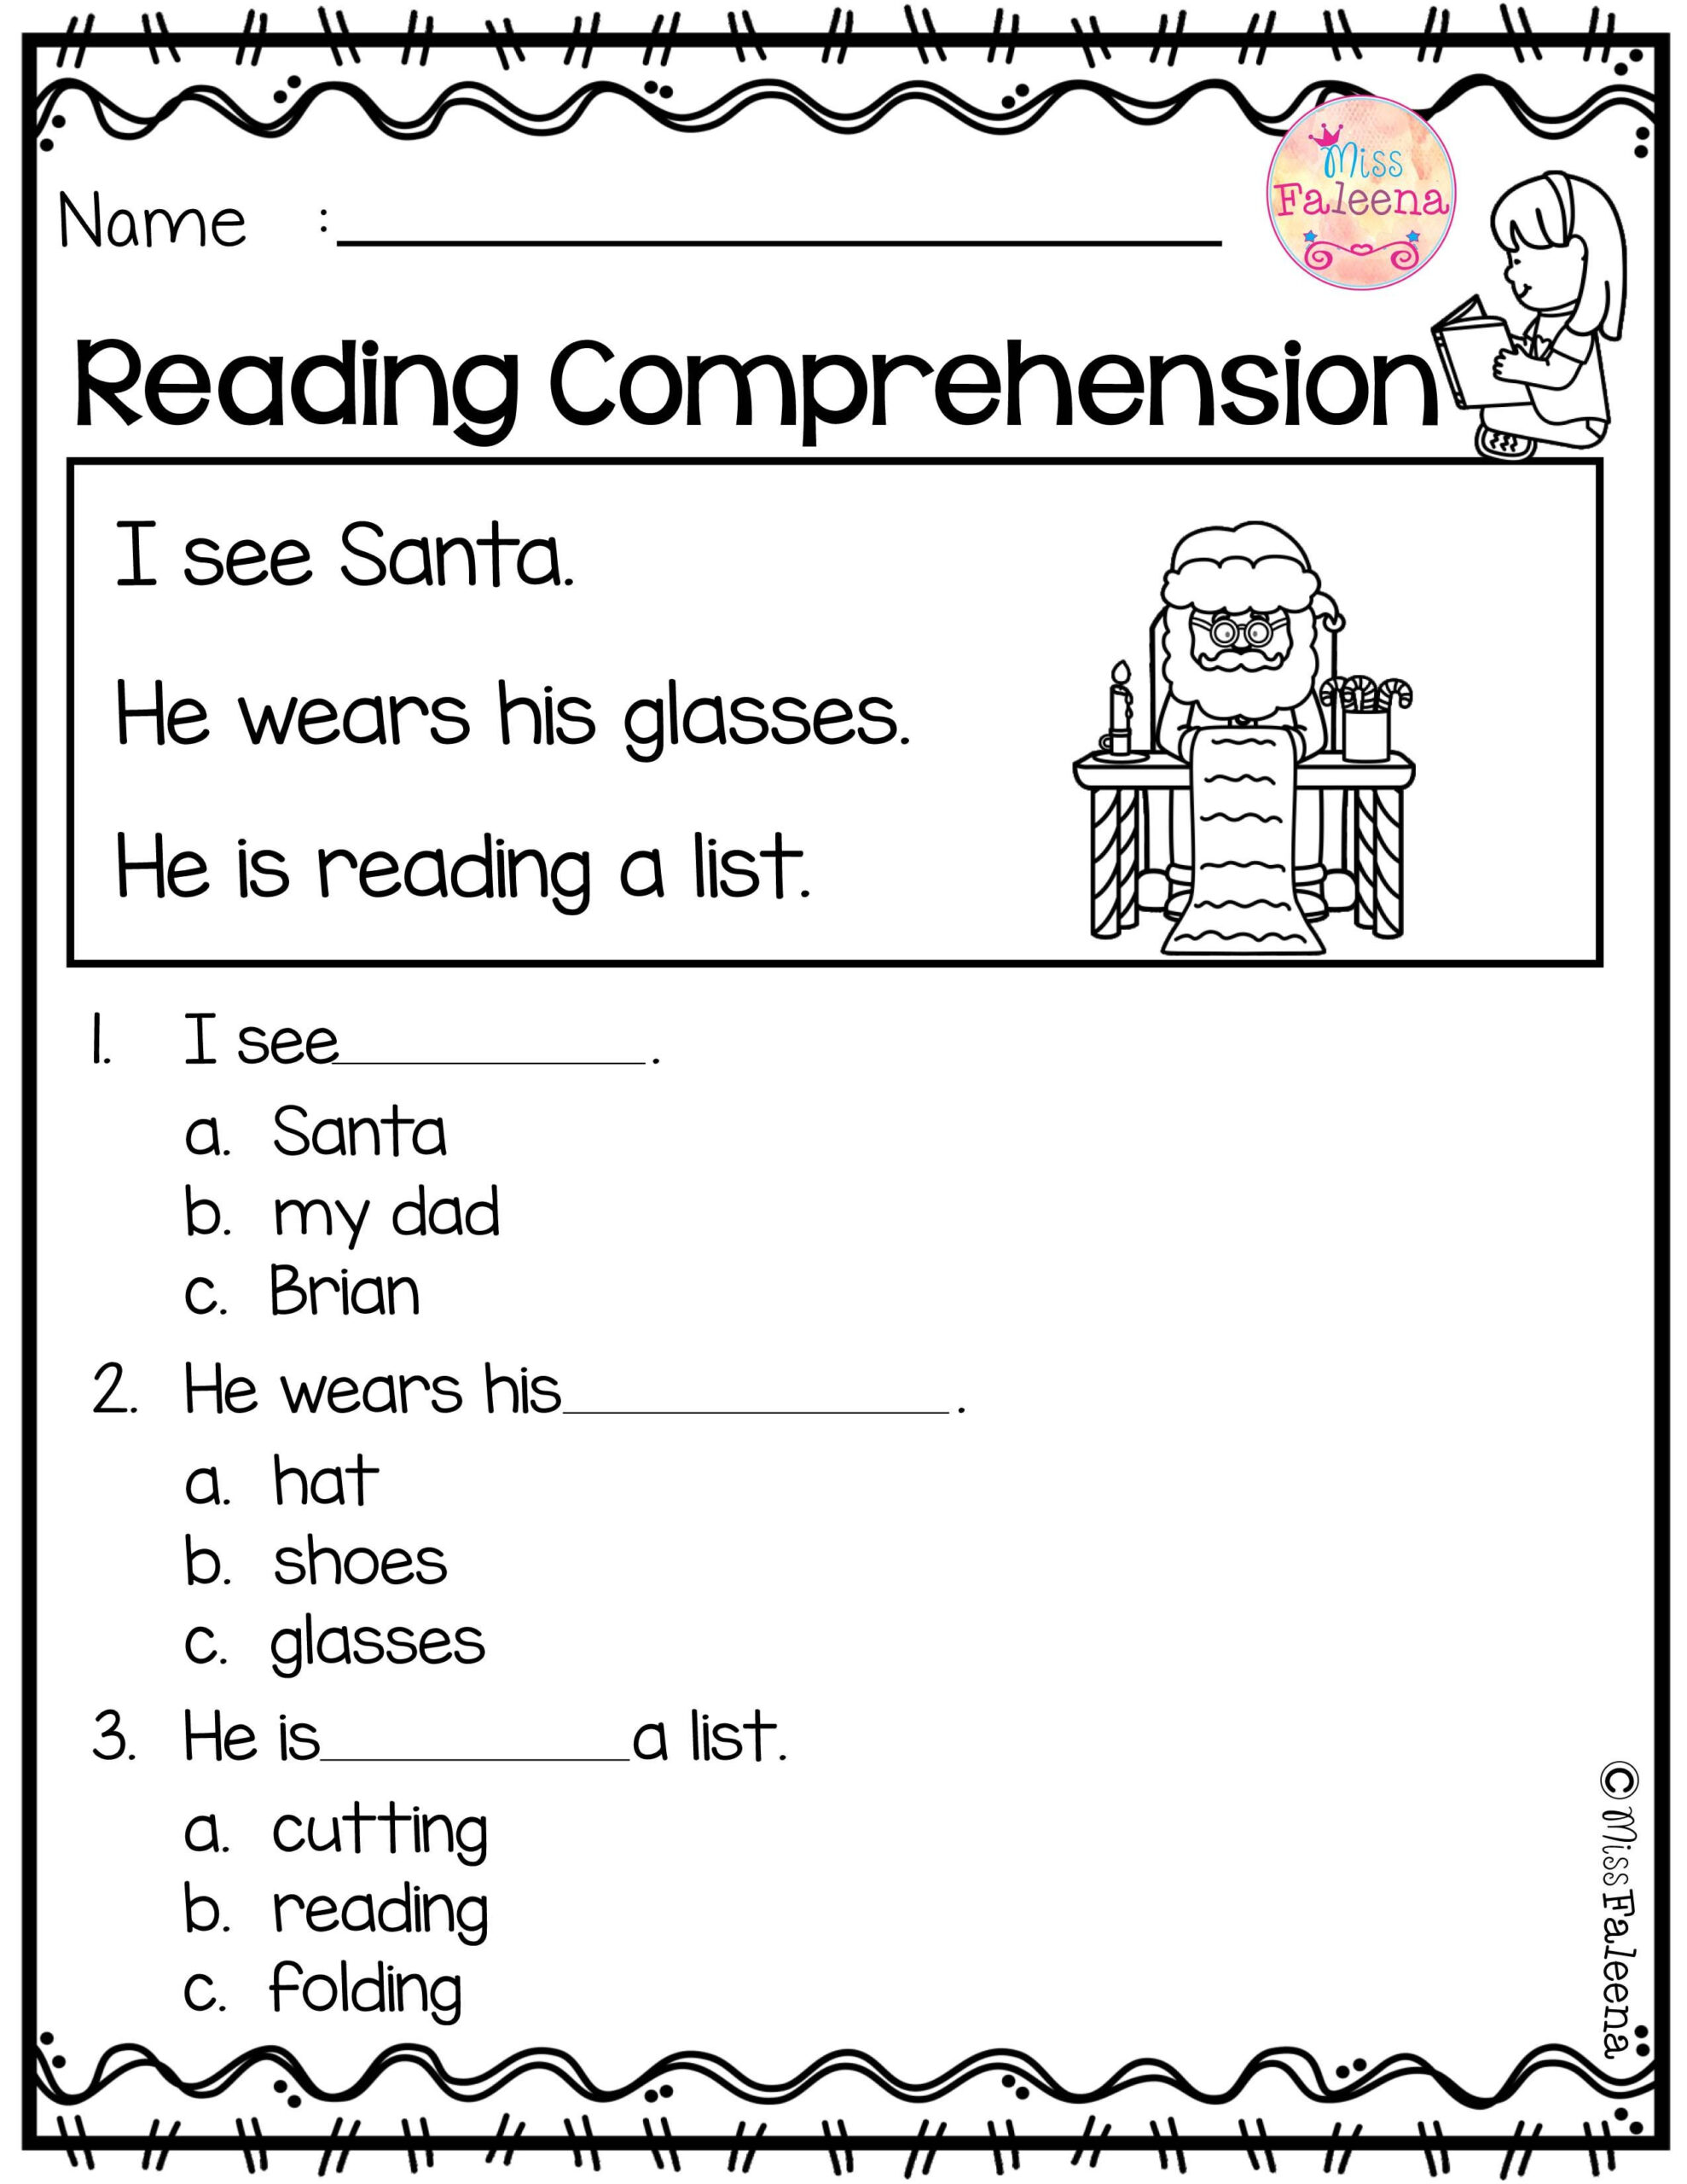 reading-comprehension-reading-worksheets-for-kindergarten-reading